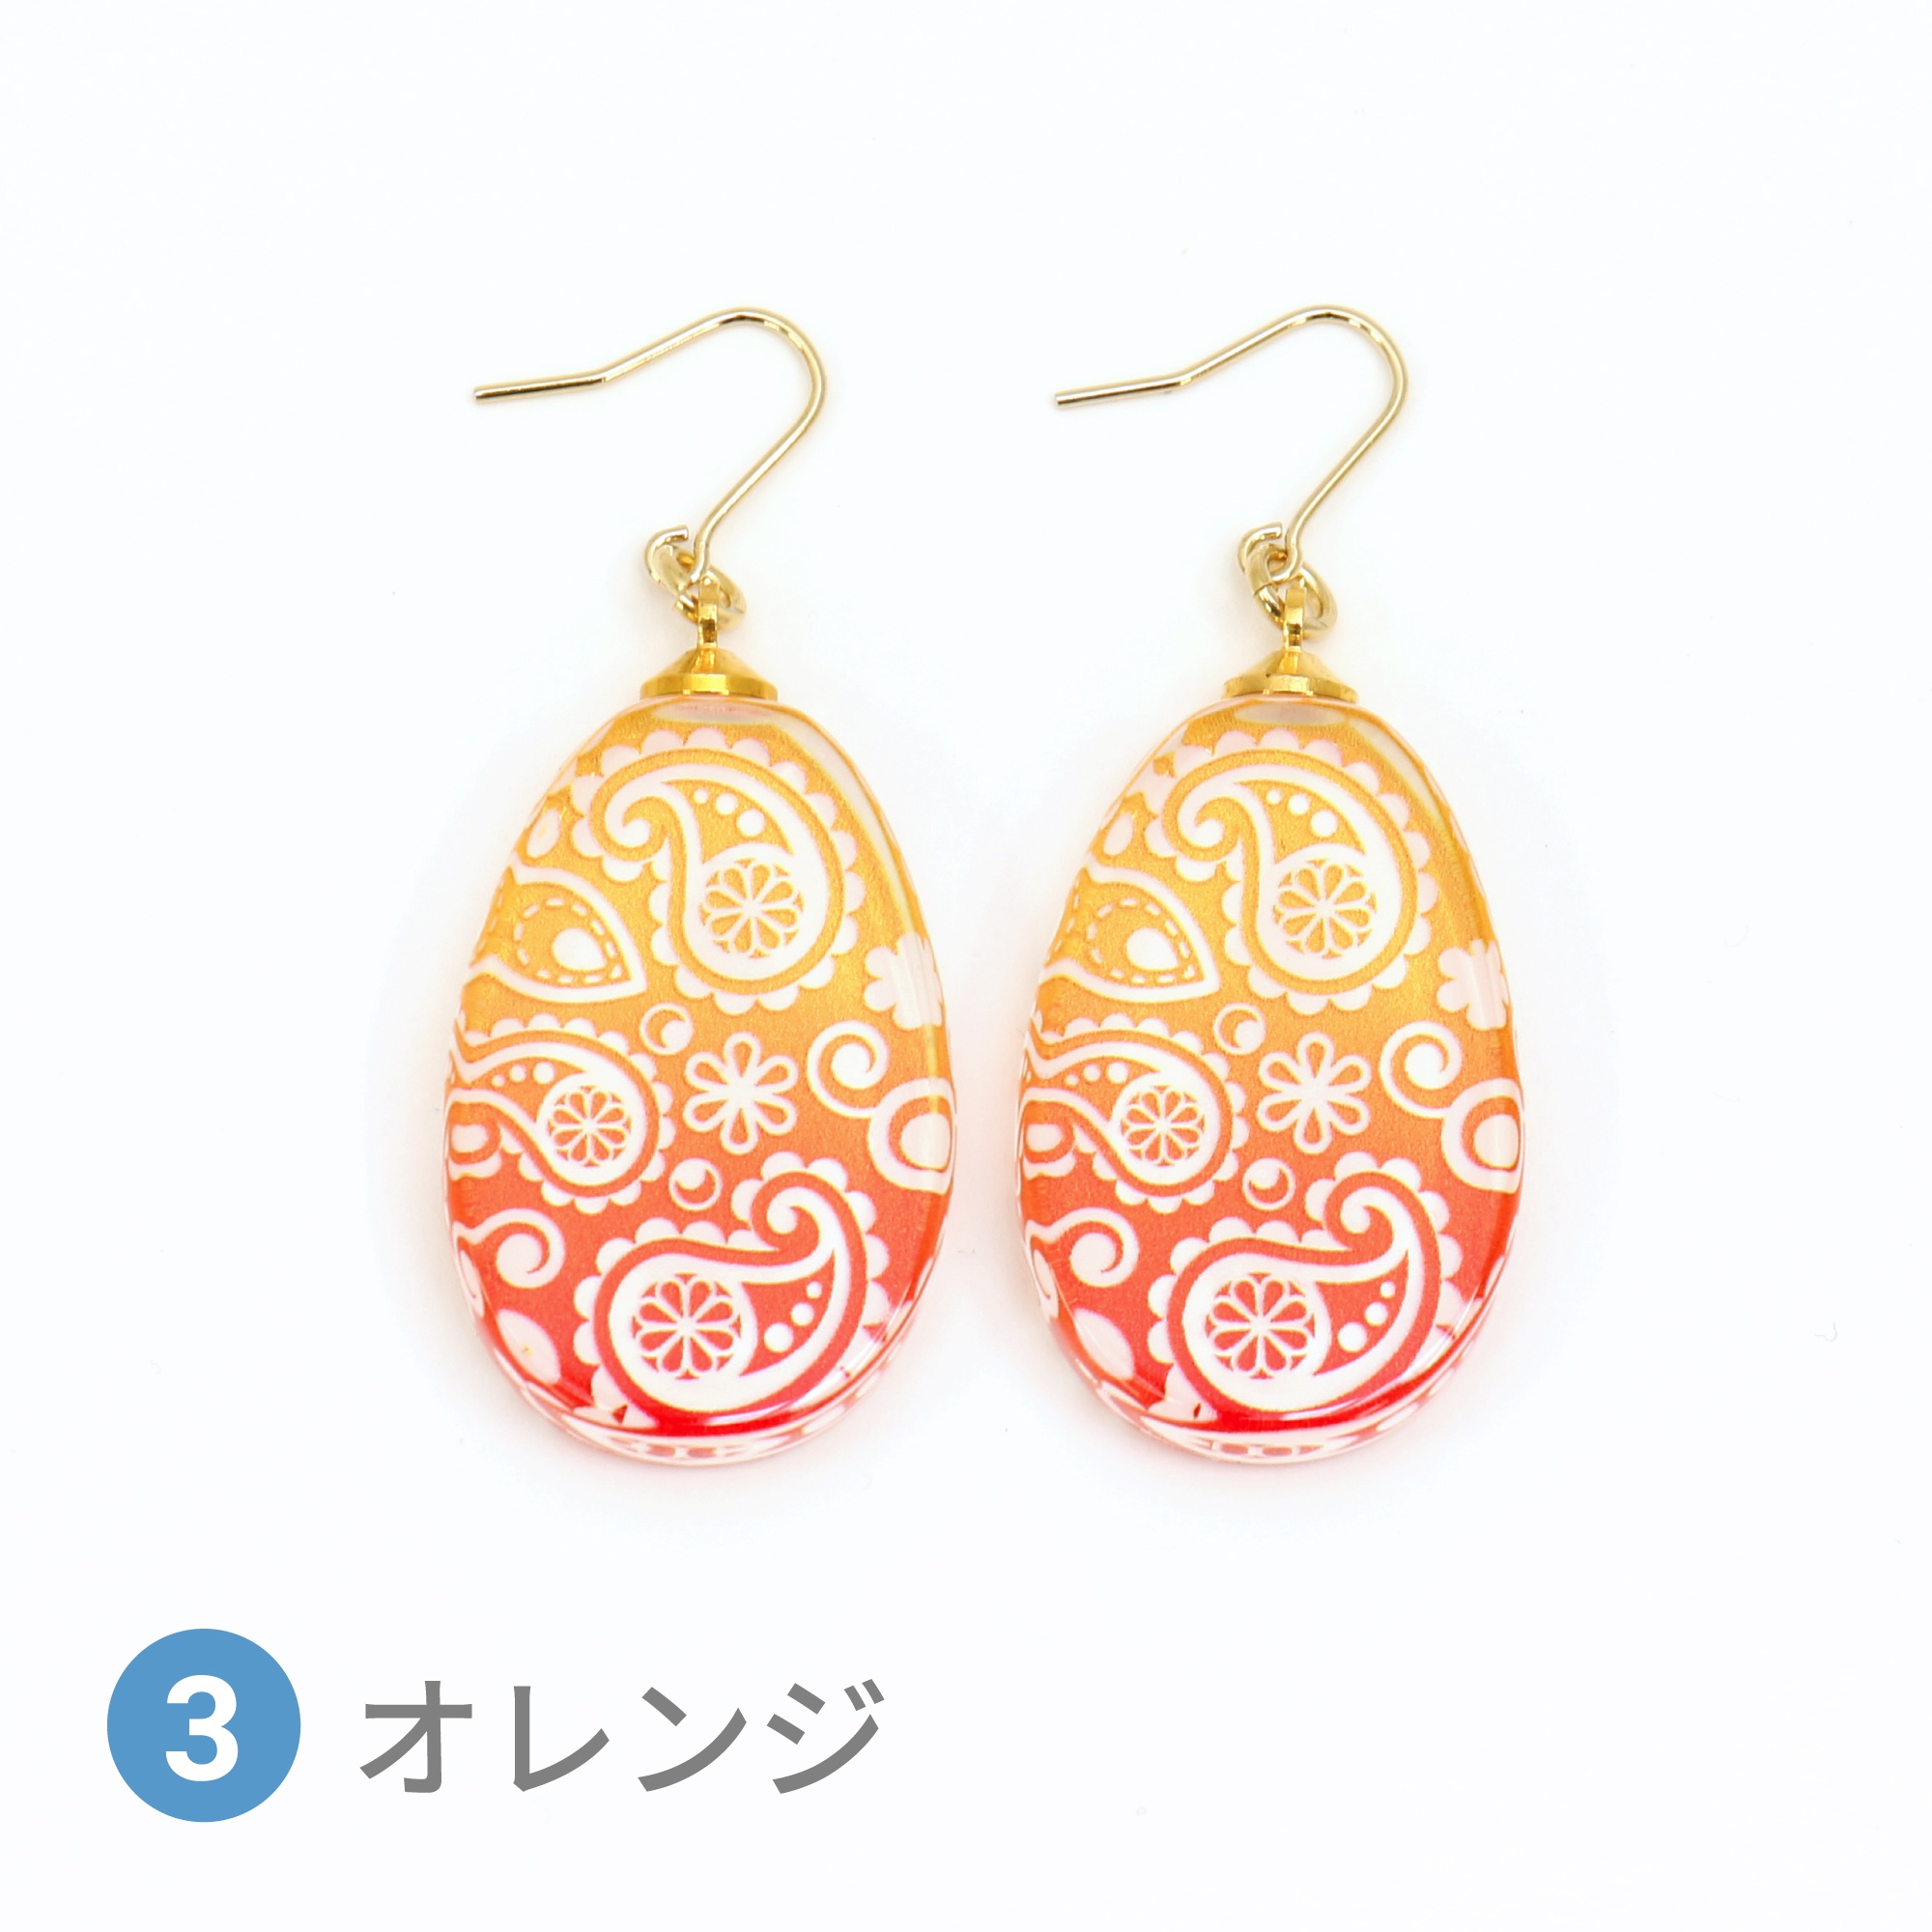 Glass accessories Pierced Earring PAISLEY orange drop shape